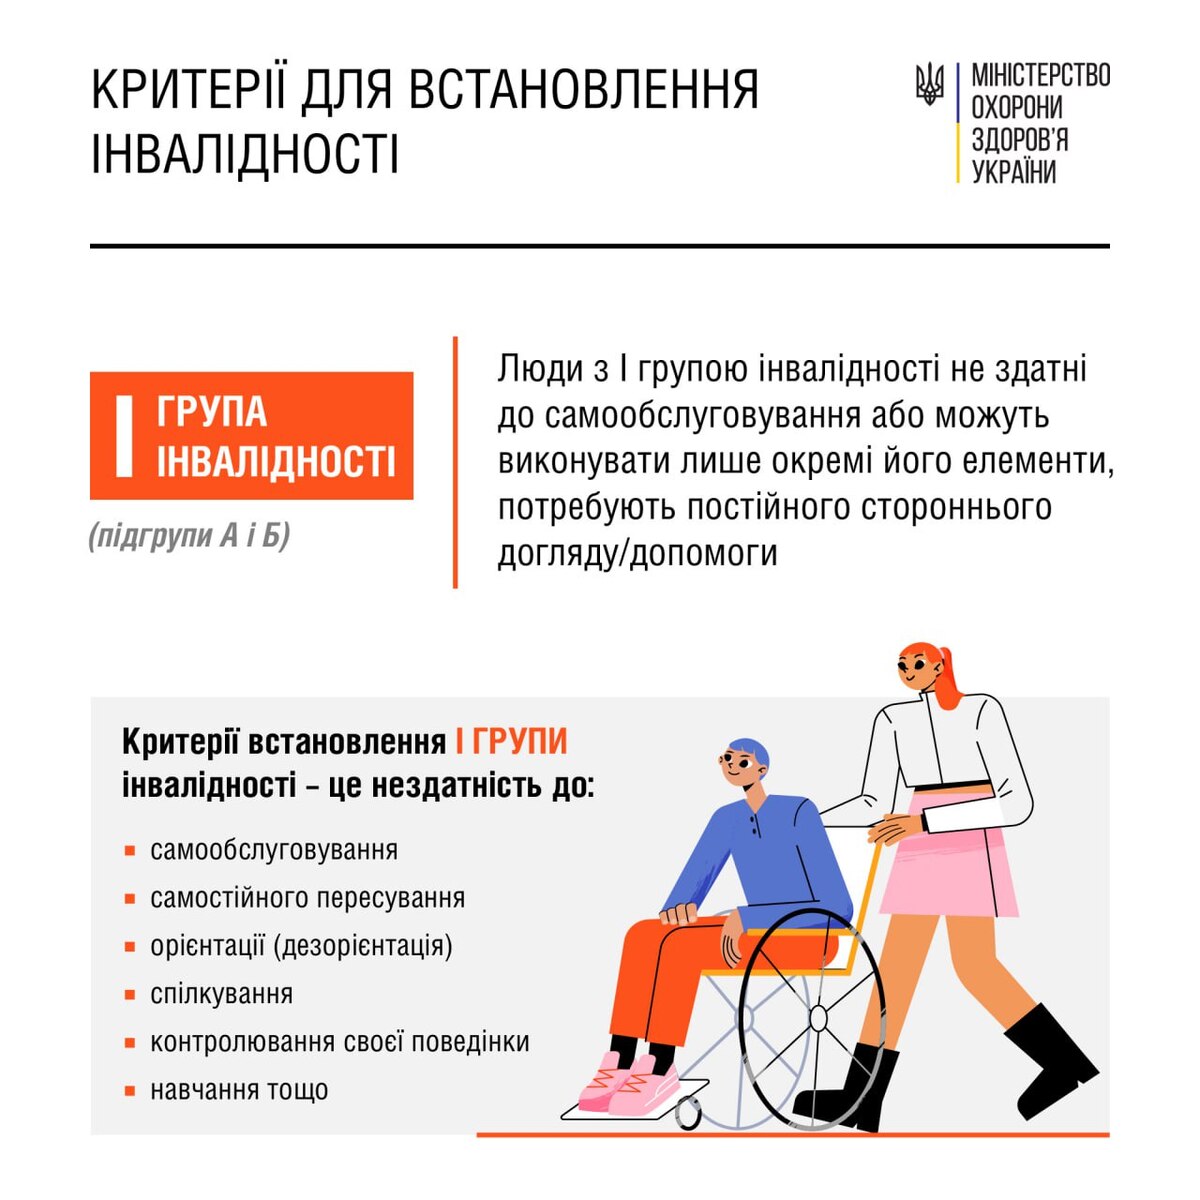 Як встановлюють групу інвалідності в Україні - в МОЗ розповіли деталі